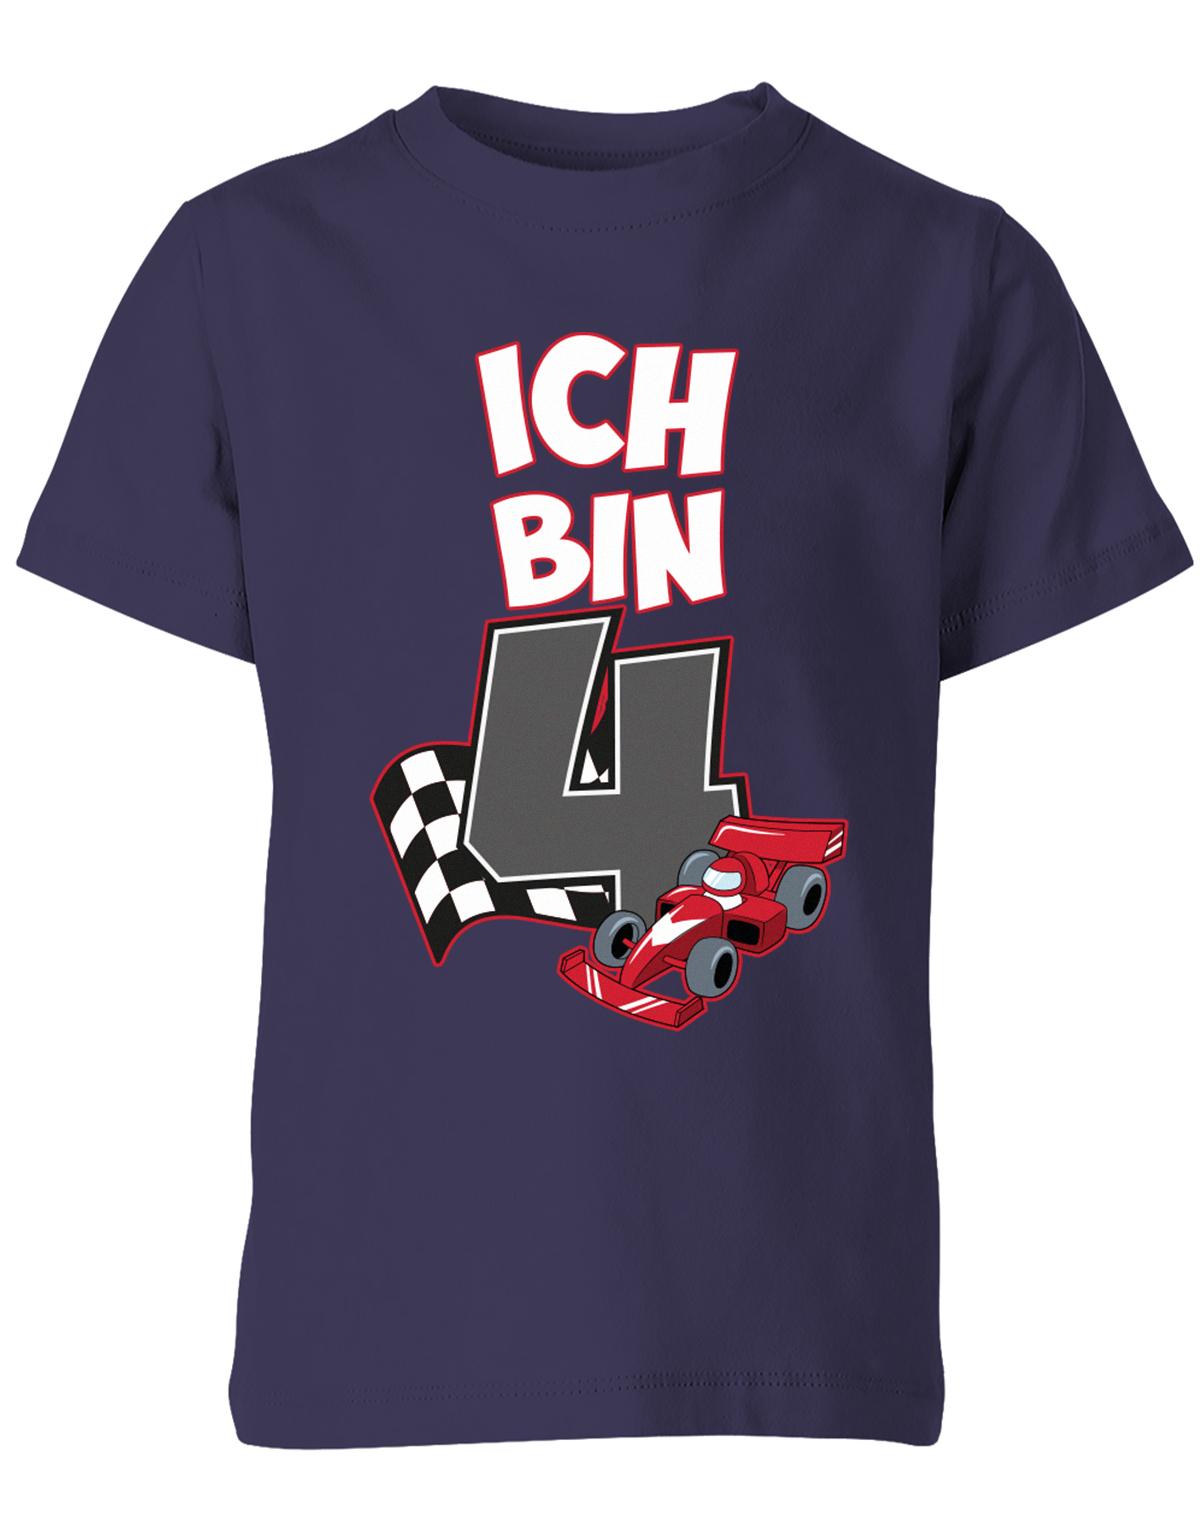 ich-bin-4-autorennen-rennwagen-geburtstag-rennfahrer-kinder-shirt-navy